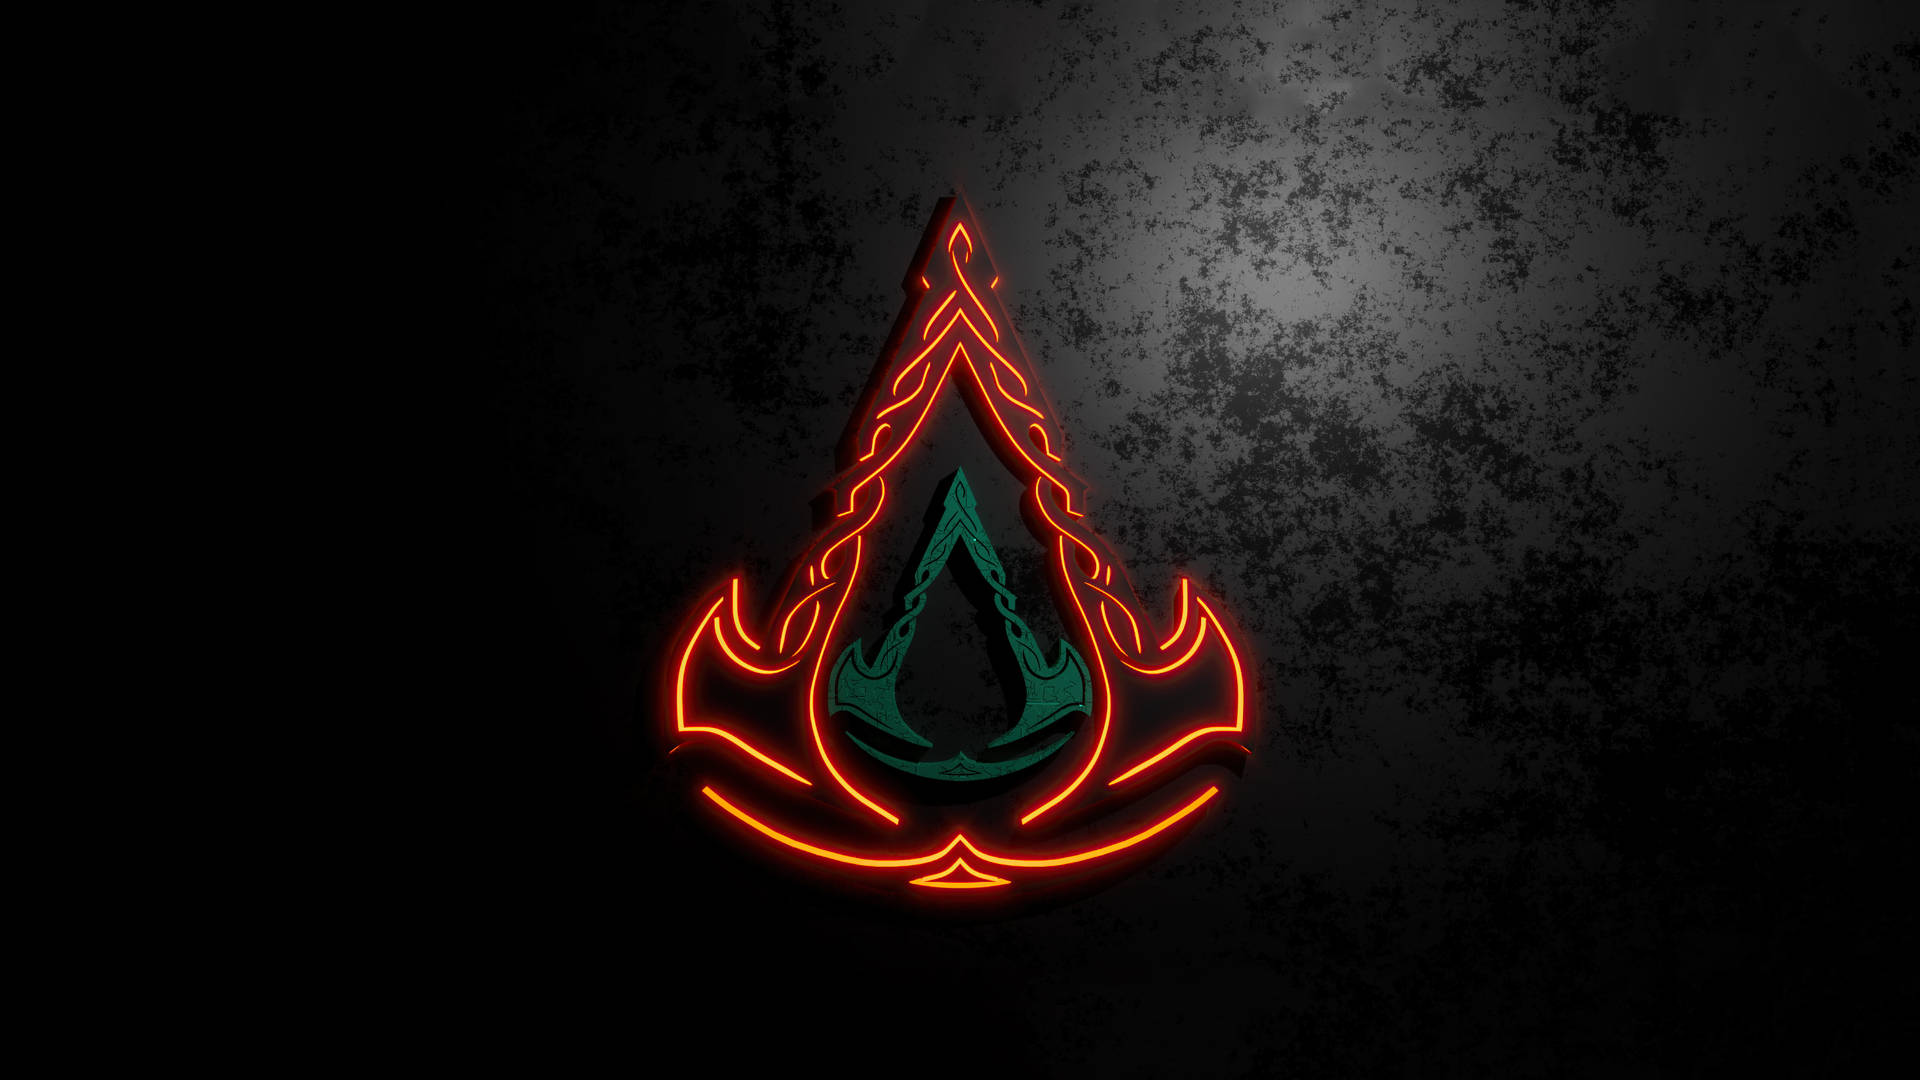 Spelsymbolenför Assassin's Creed Valhalla På Bakgrundsbilden På Datorn Eller Mobilen. Wallpaper